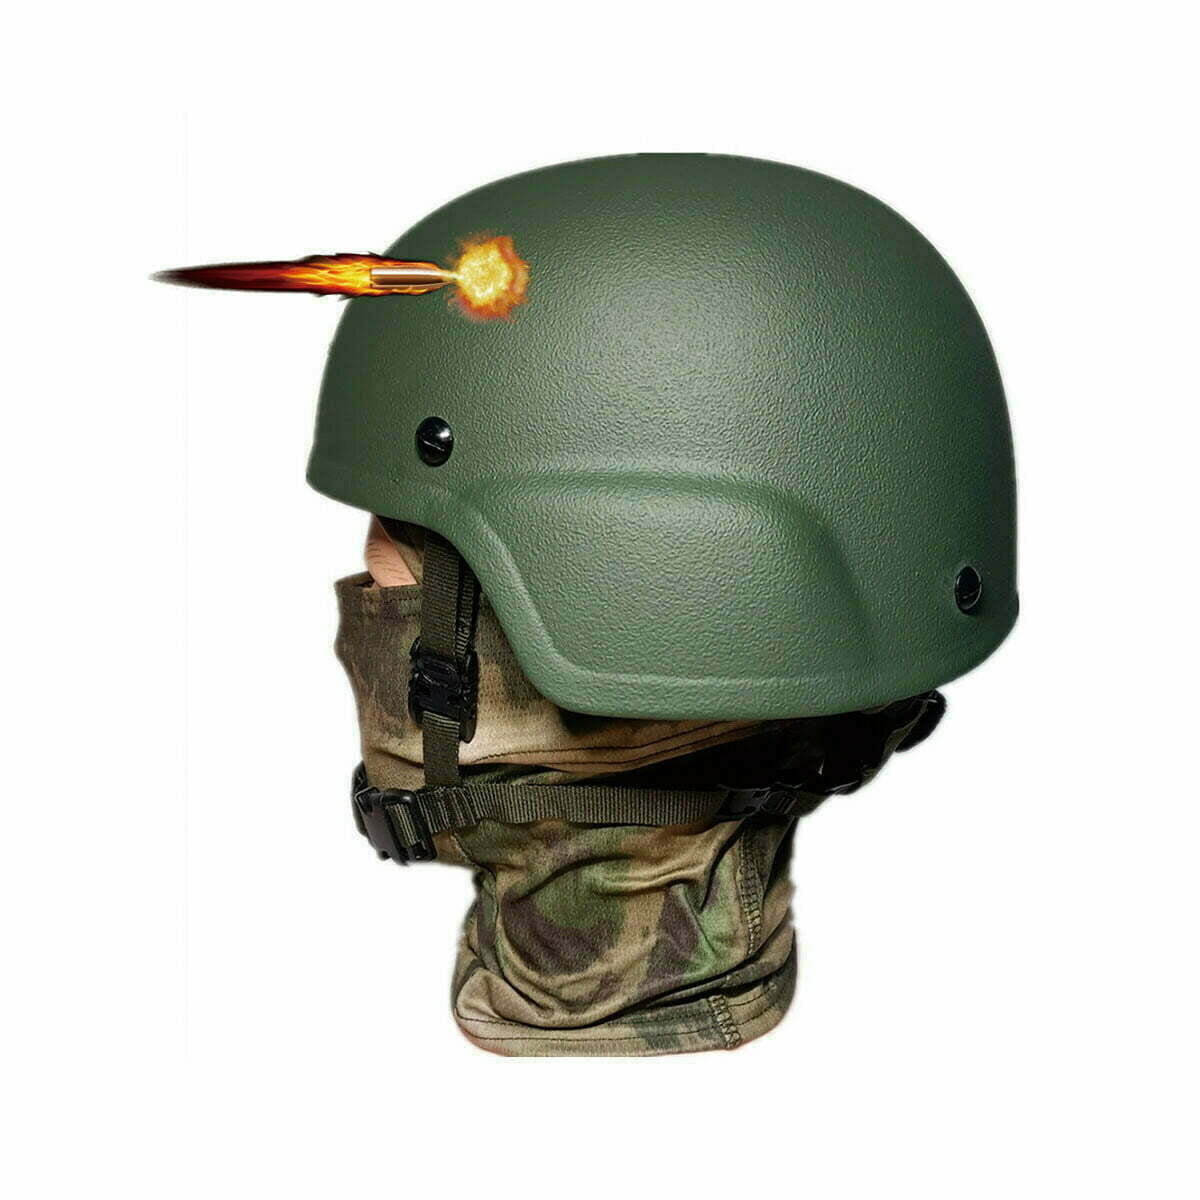 Casco militare, casco balistico tattico IIIA, casco in kevlar polacco,  verde – Kask wojskowy balistyczny, hełm taktyczny kevlar